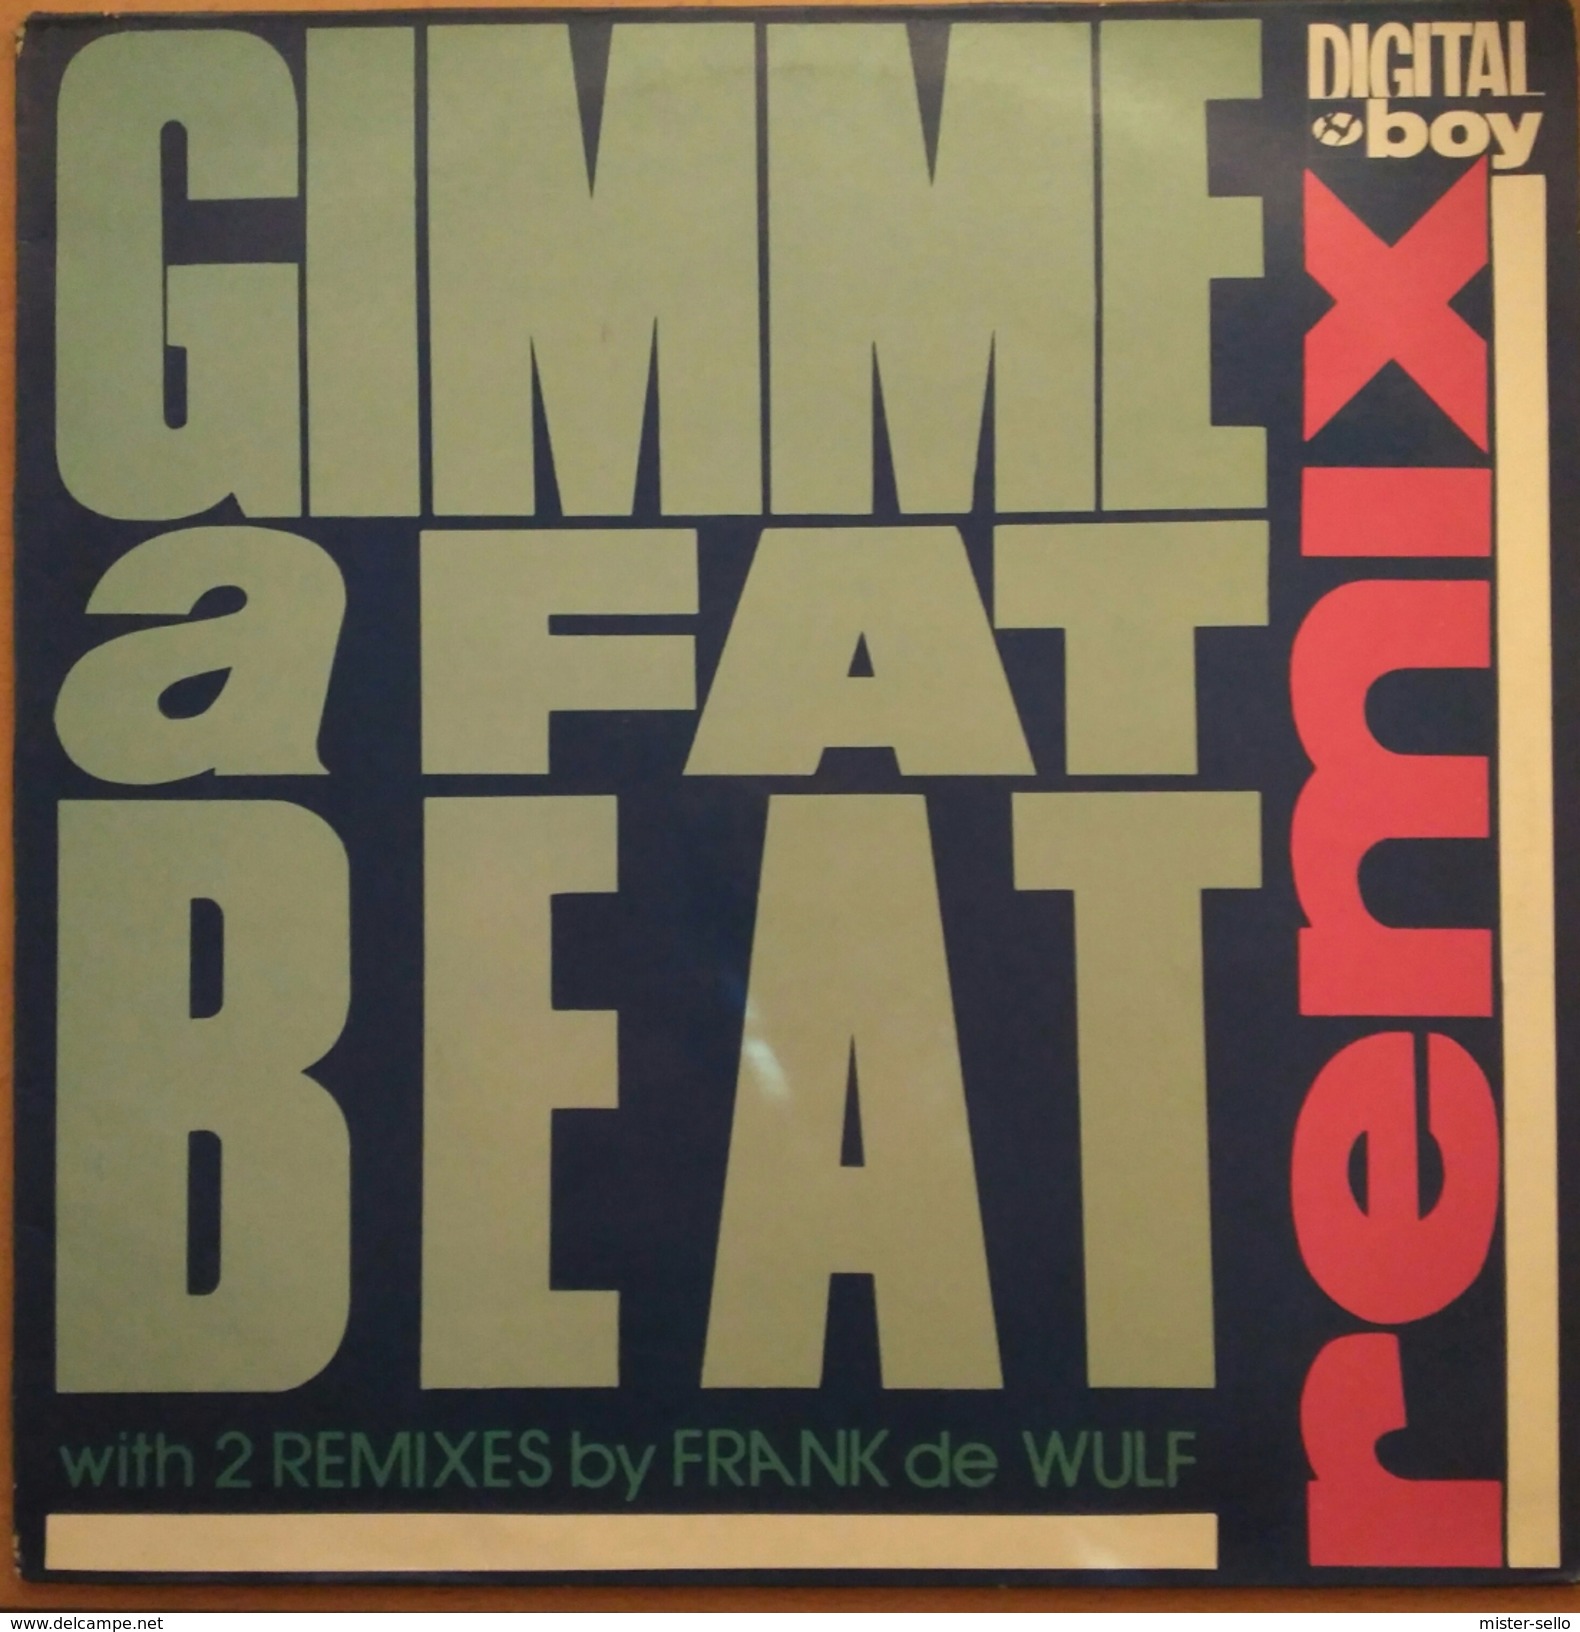 DIGITAL BOY - GIMME A FAT BEAT. MAXI SINGLE. USADO - USED. - 45 T - Maxi-Single